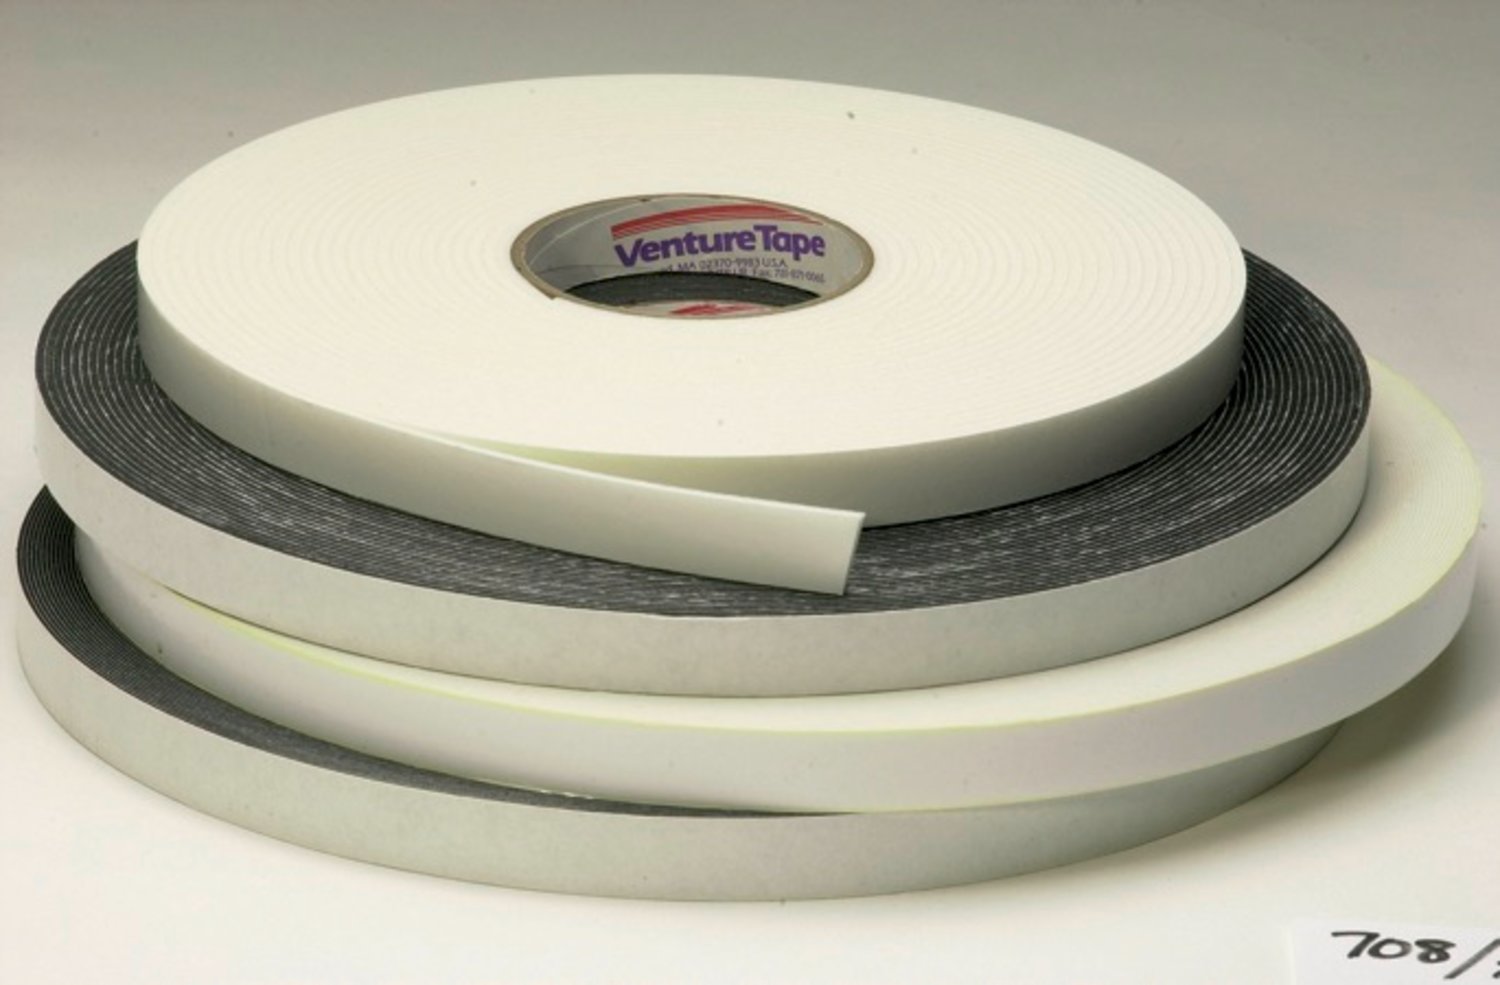 7010379966 - 3M Venture Tape Double Sided Polyethylene Foam Glazing Tape VG7132,
Black, 71/2 in 250 ft, 31 mil, 40 rolls per case